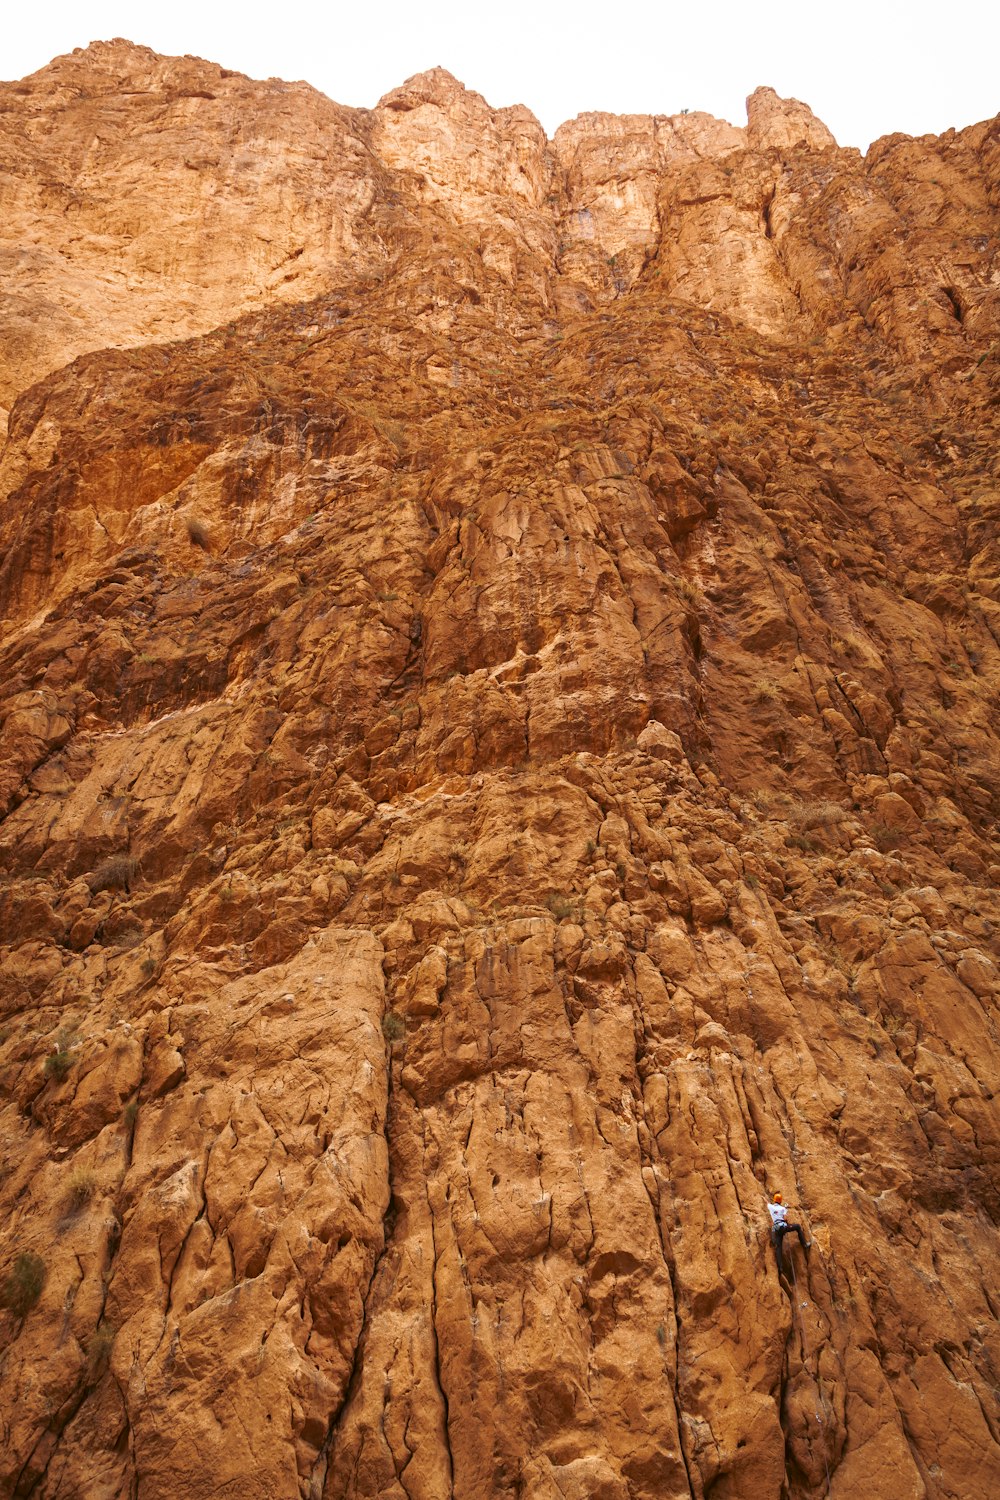 a person walking on a rocky terrain